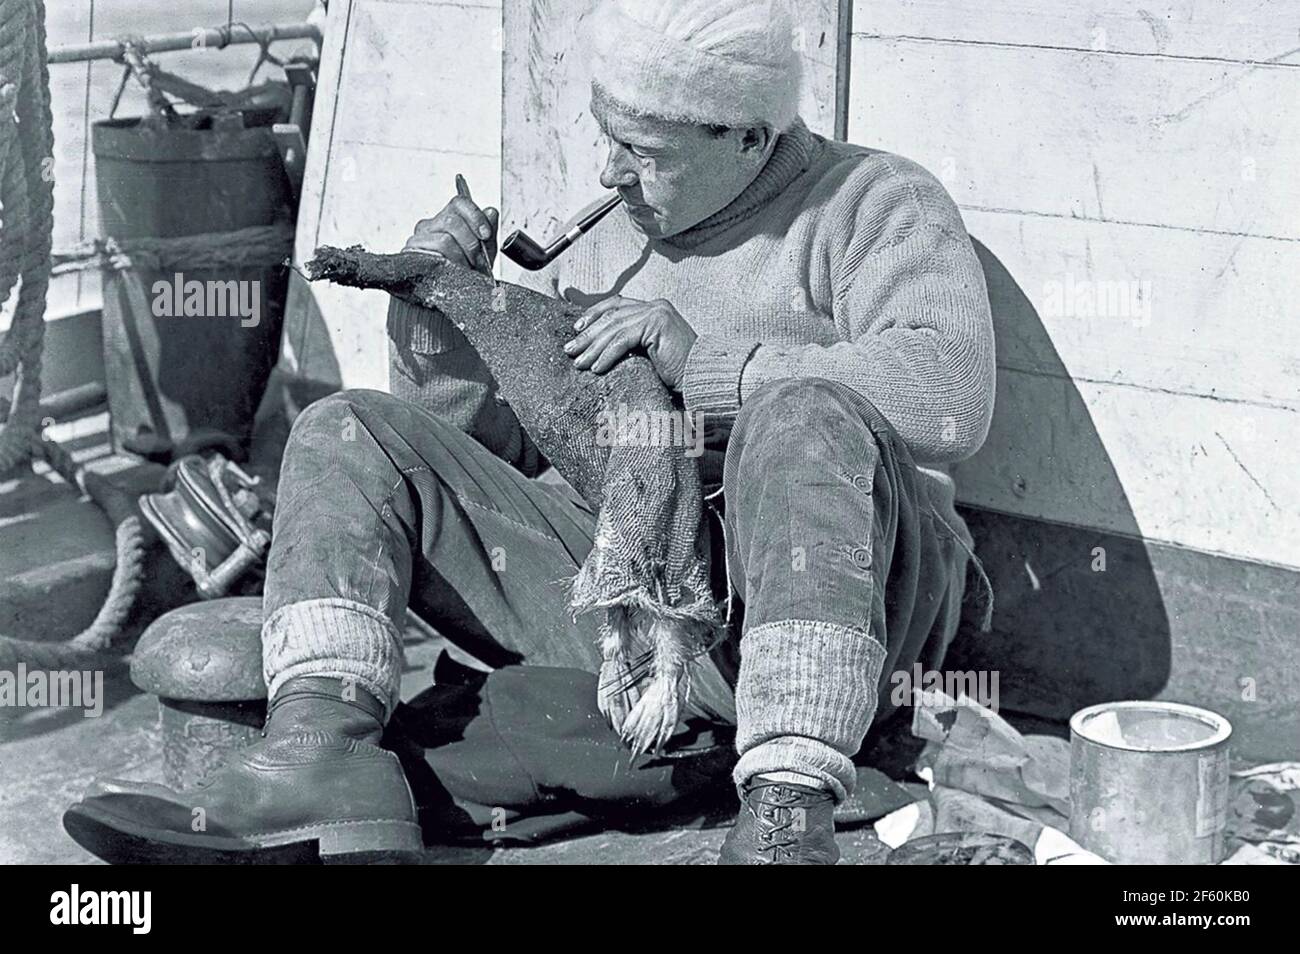 GEORGE MURRAY LEDICK (1876-1956) explorateur et chirurgien naval anglais de l'antarctique Skinning un pingouin en 1910 pendant Terra de Robert Falcon Scott Expédition Nova 1911-1912 Banque D'Images